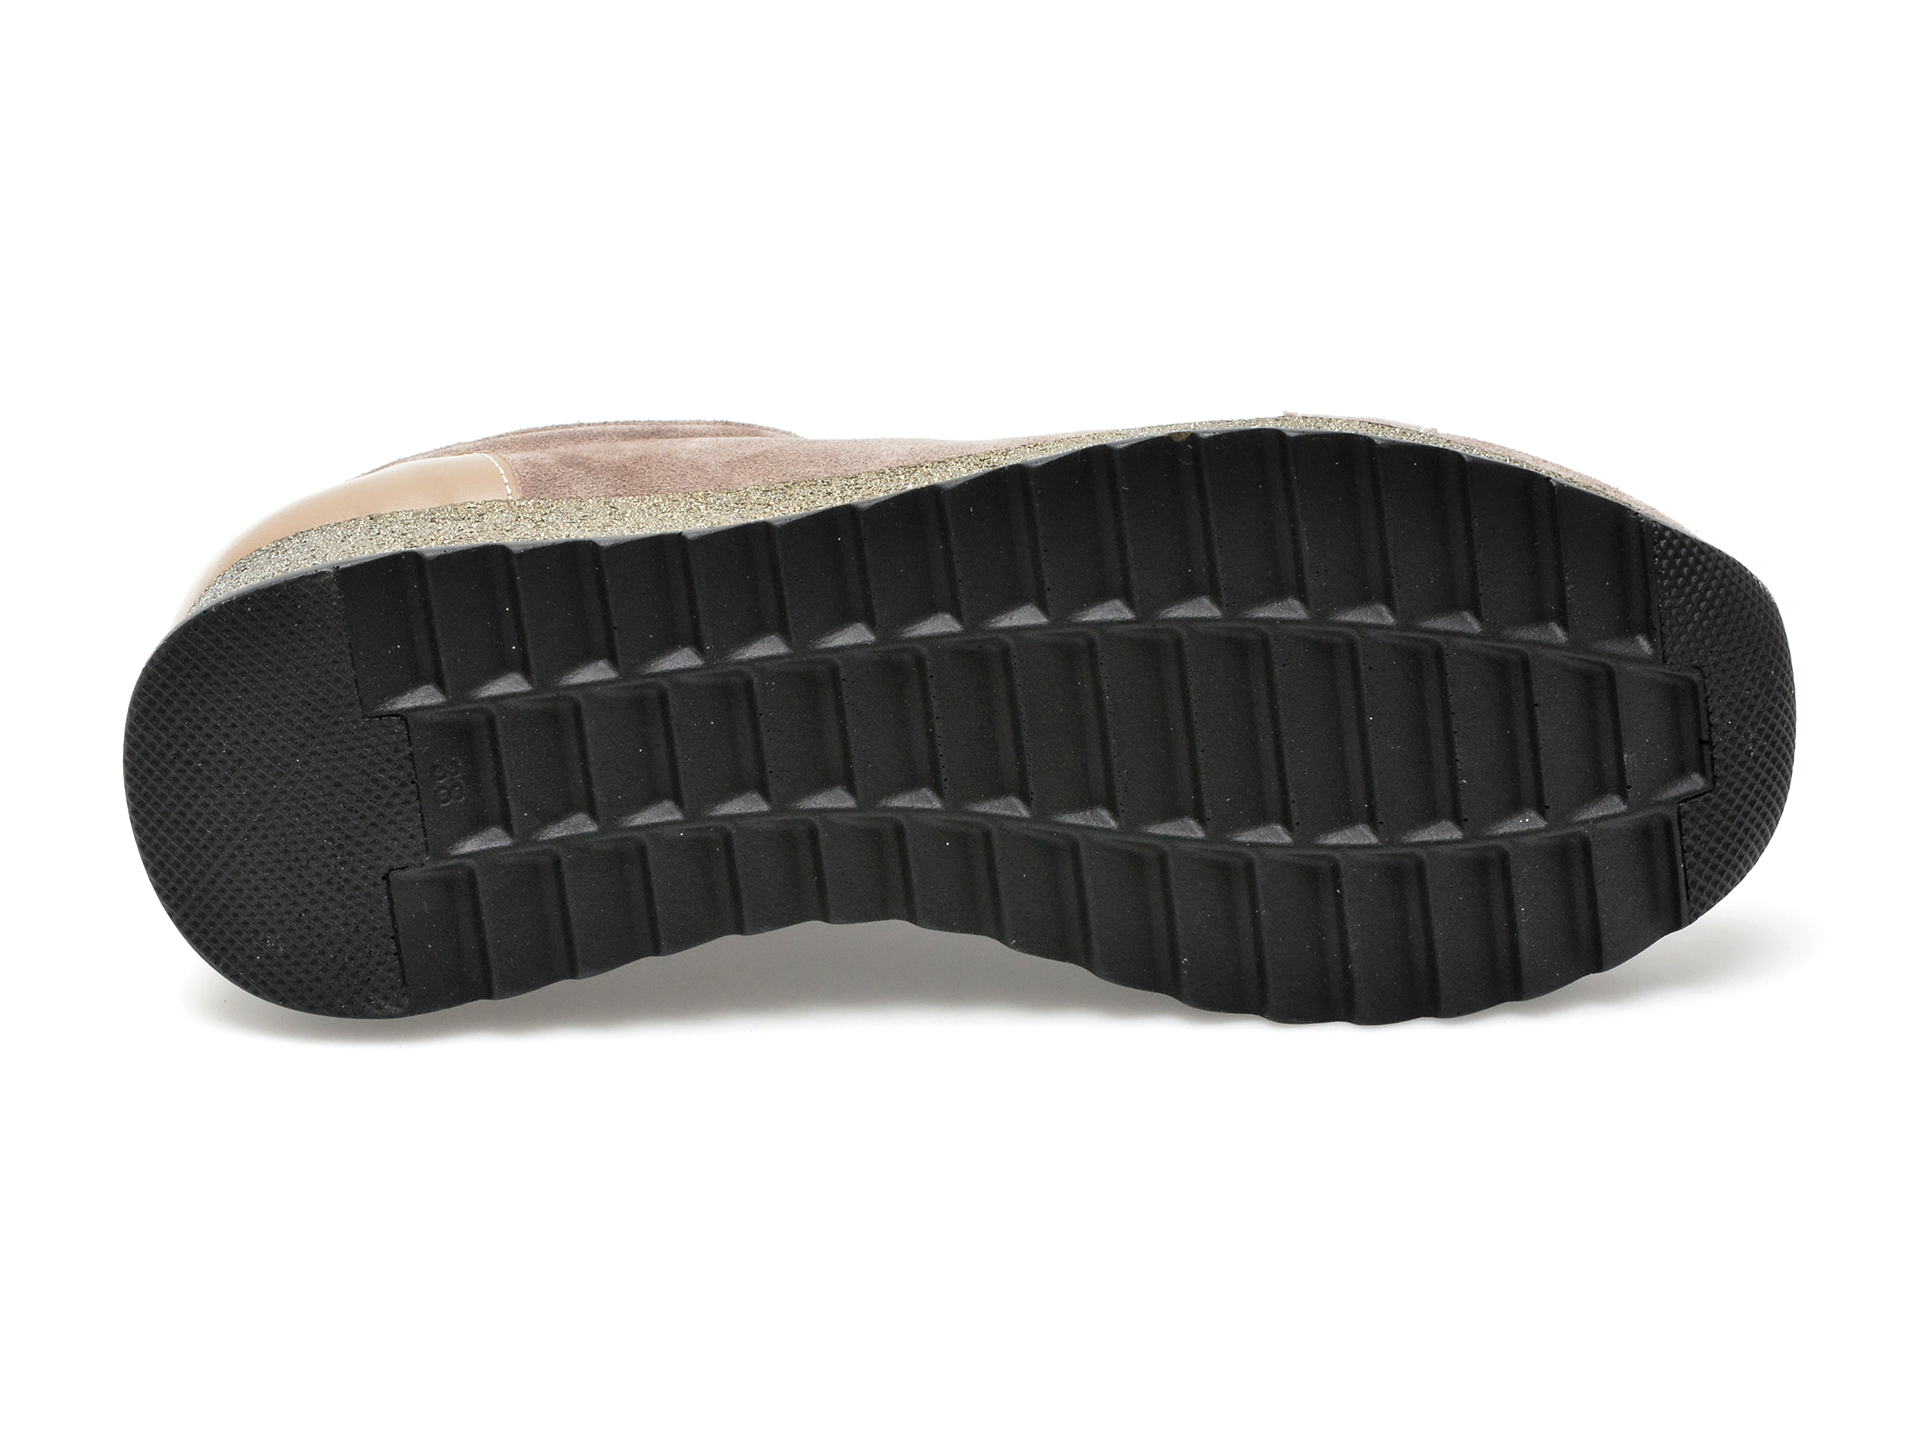 Pantofi LABOUR gri, 30006, din piele intoarsa